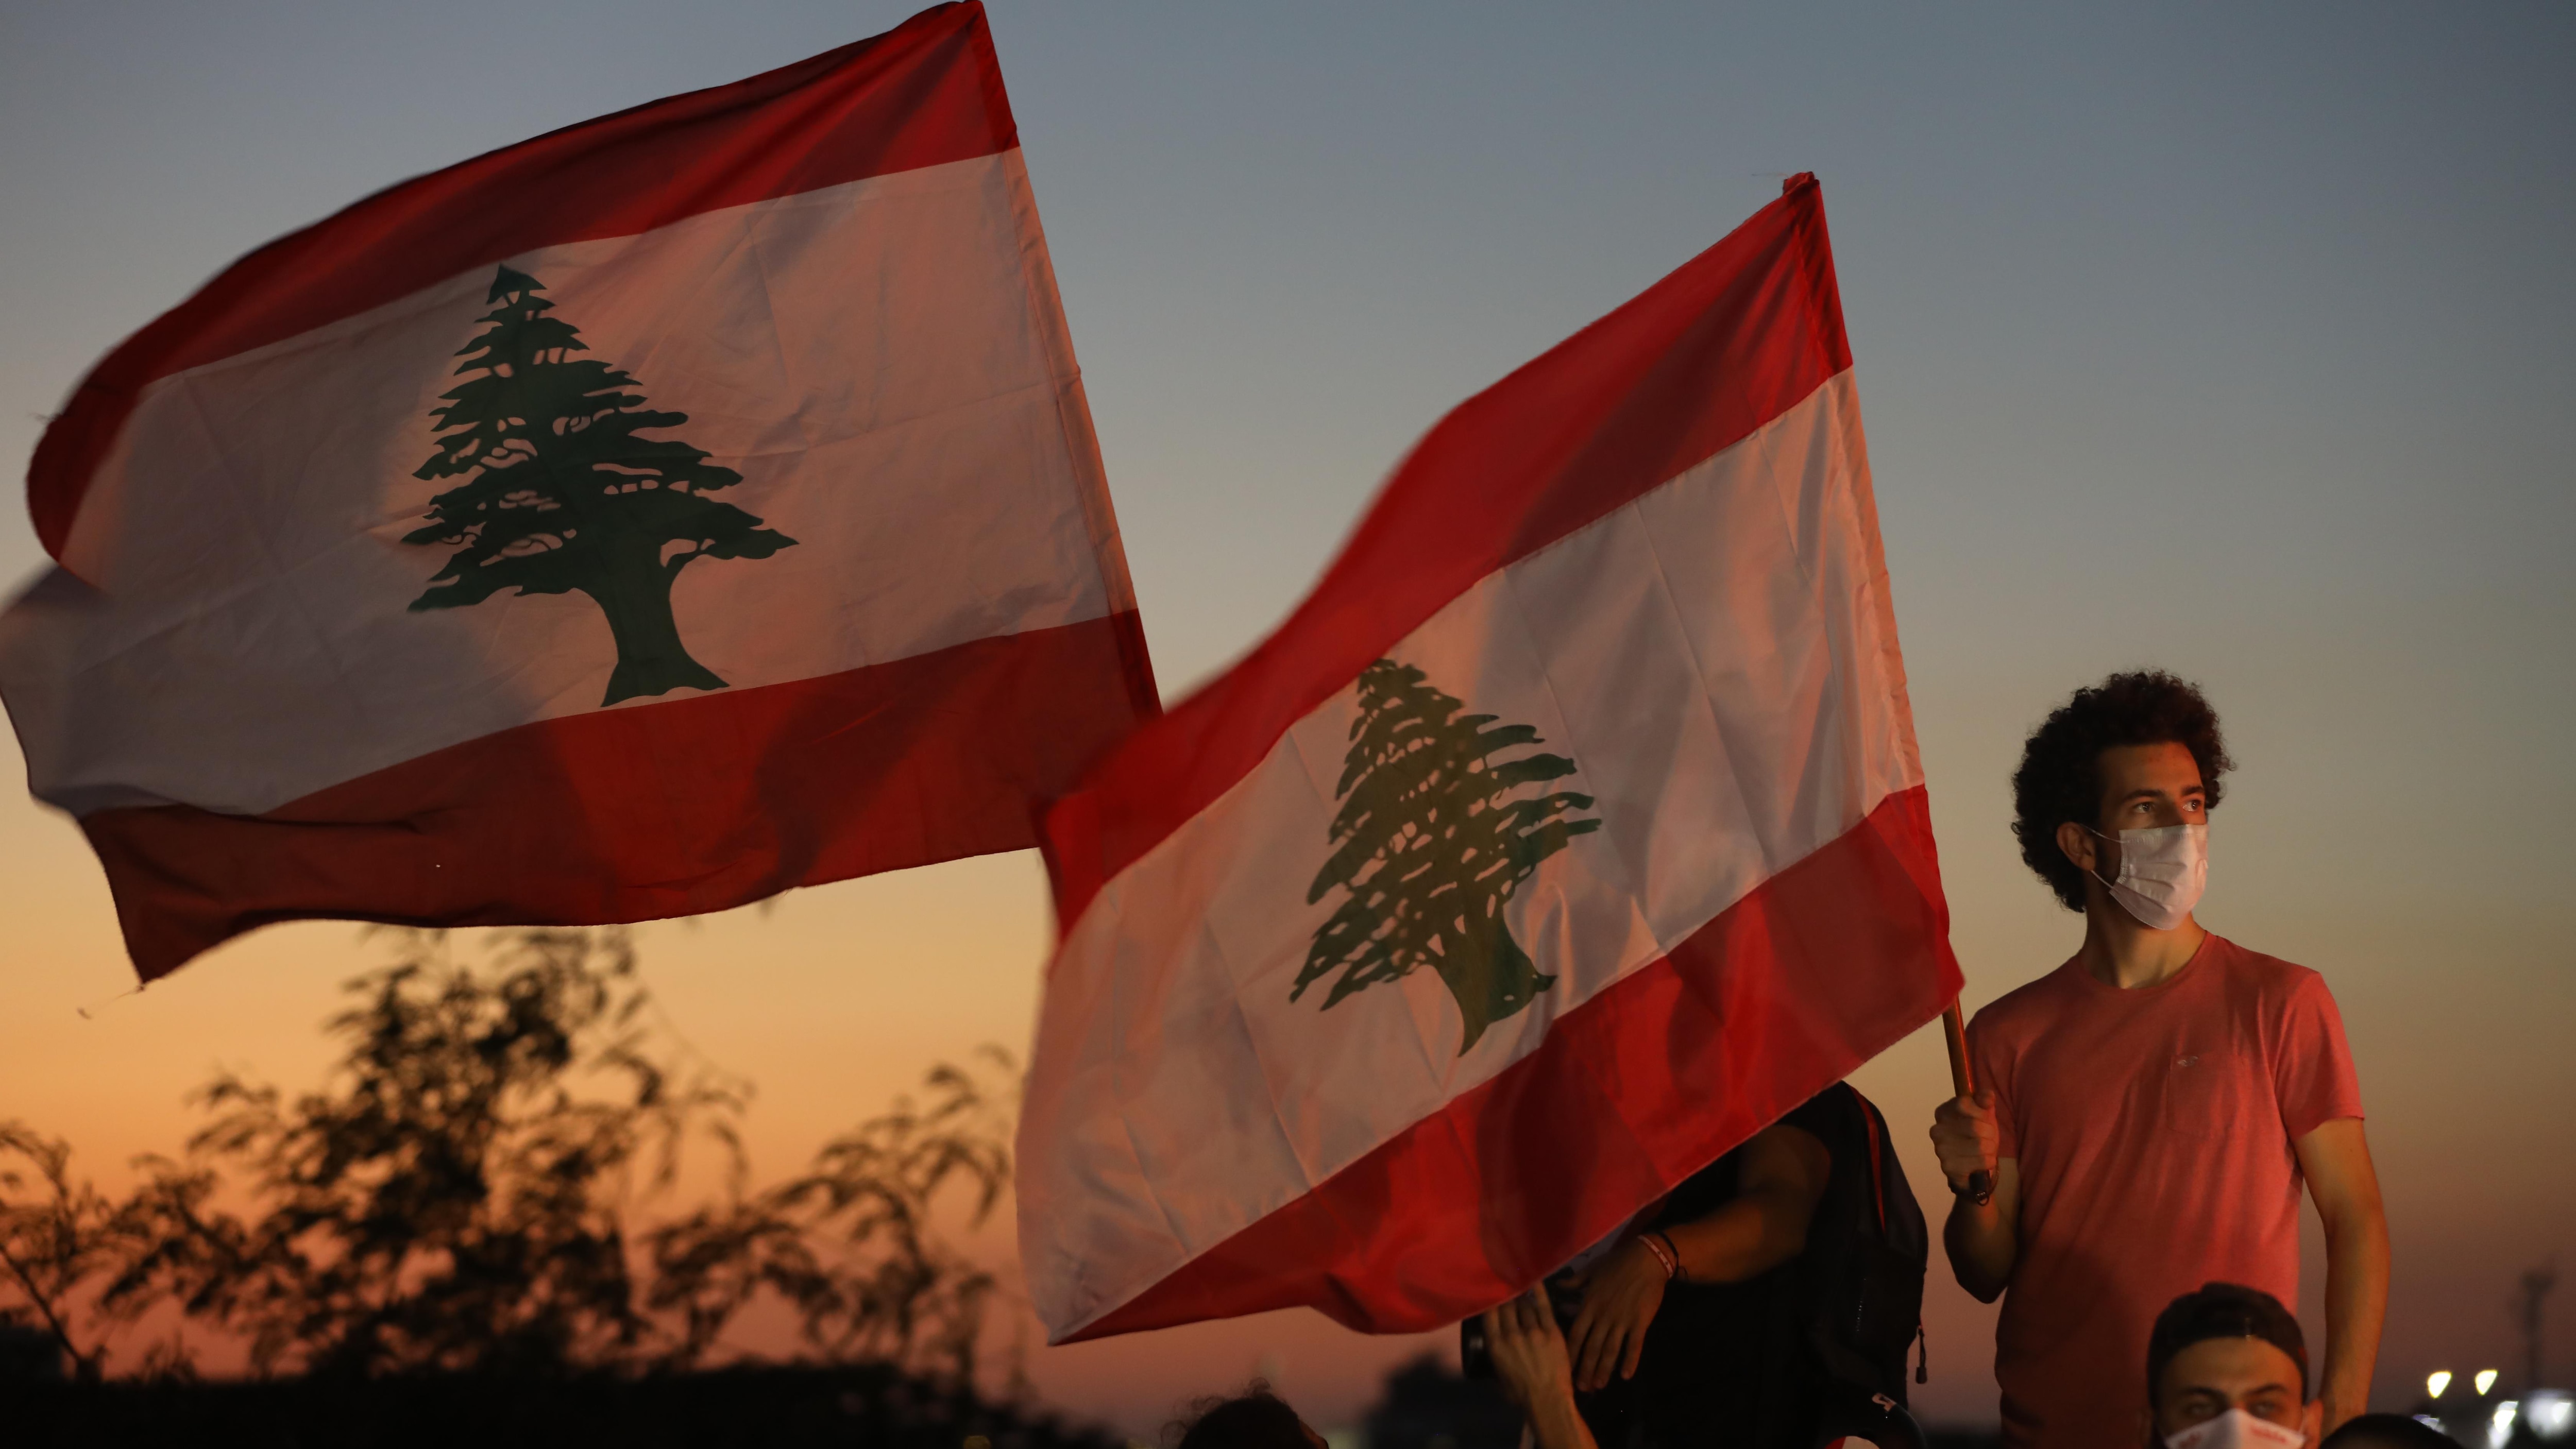 La diaspora libanaise en Ontario célèbre la Fête de l'indépendance du Liban
La diaspora libanaise en Ontario célèbre la Fête de l'indépendance du Liban